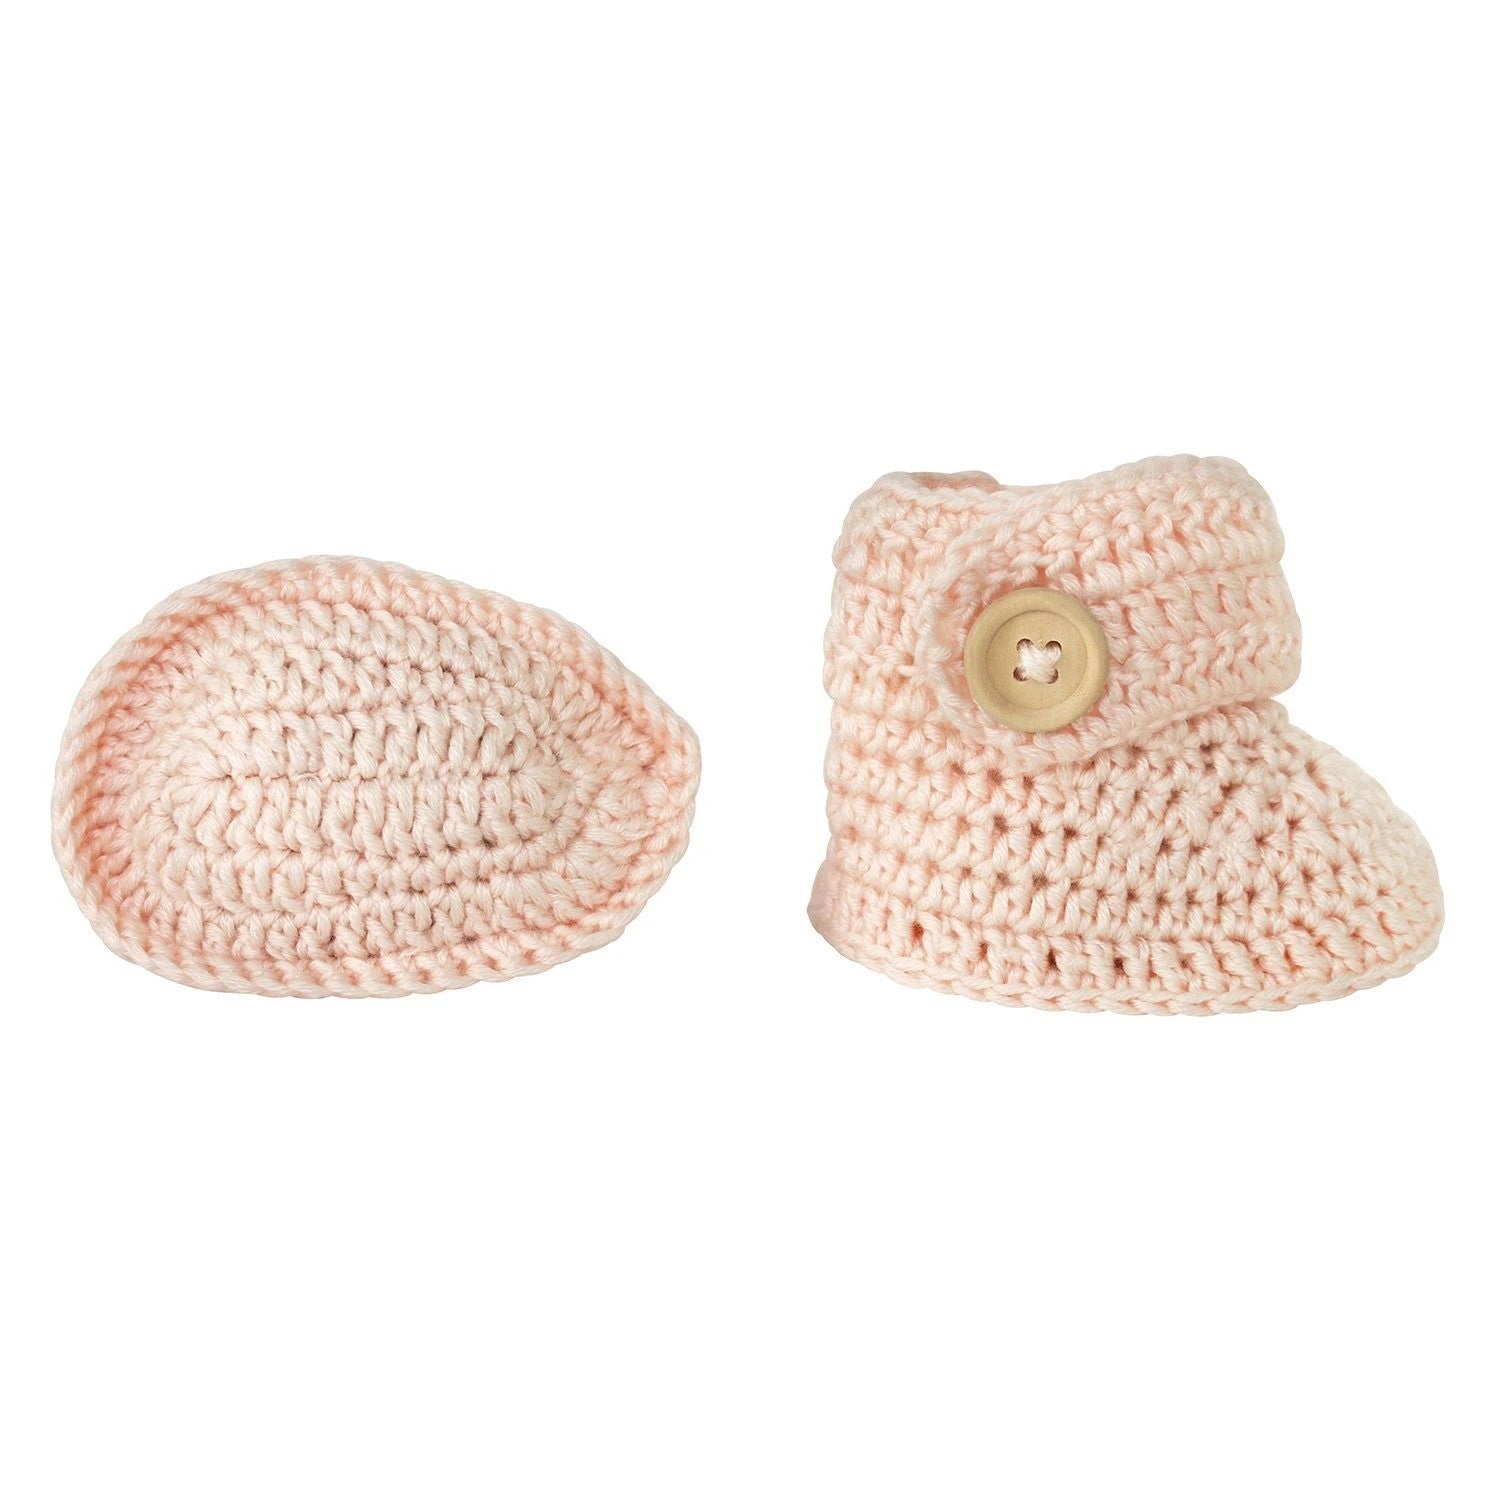 Handmade Crochet Bonnet & Bootie Set - Peach -The Mountain Merchant -OB Designs